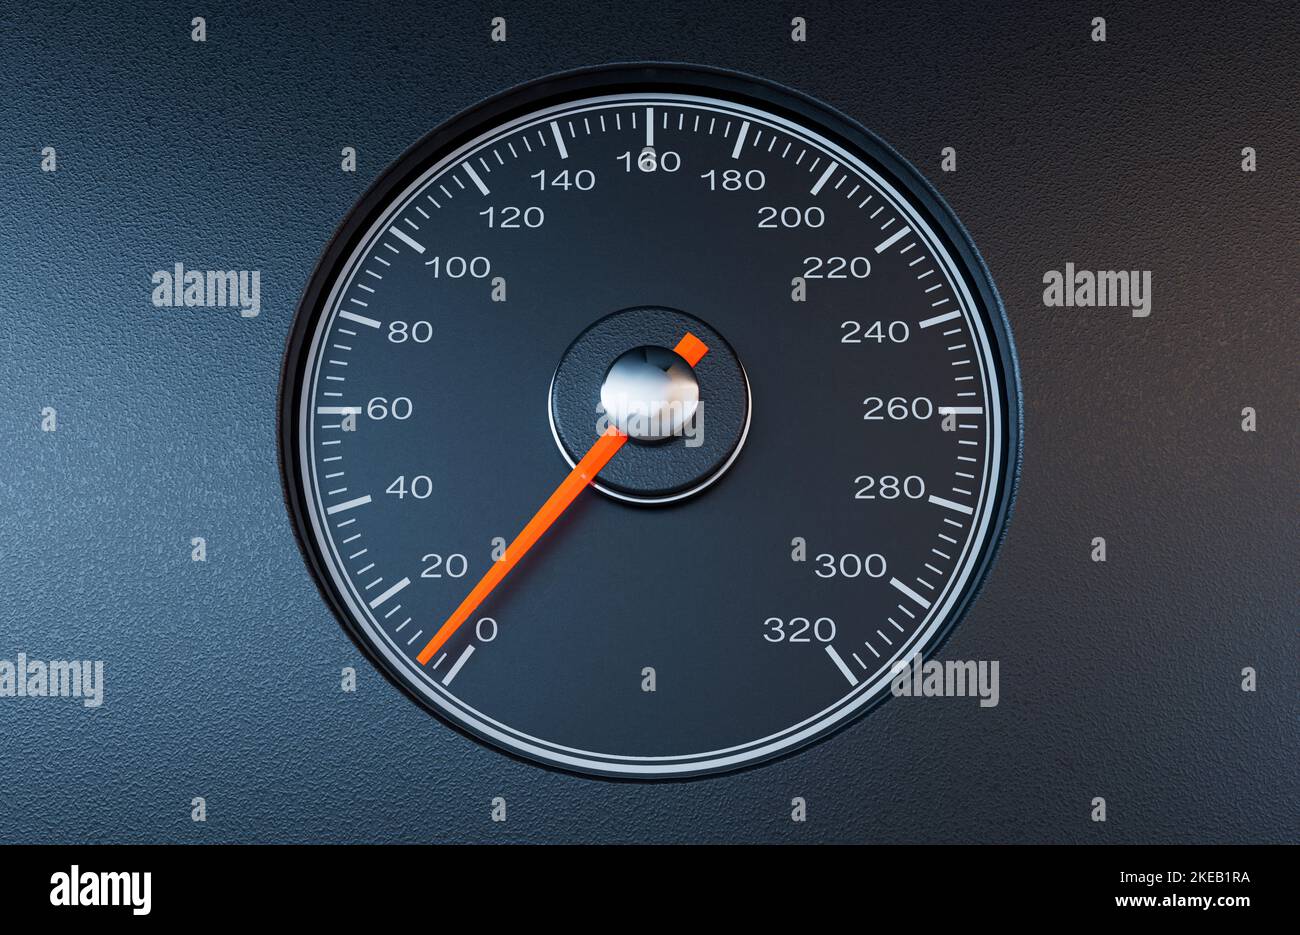 Đam mê tốc độ? Tự lái xe là một niềm đam mê của bạn? Hãy xem ngay hình ảnh này để biết thêm về các loại đồng hồ đo tốc độ, giúp bạn kiểm soát tốc độ lái xe của mình một cách chính xác và đầy tiện lợi!